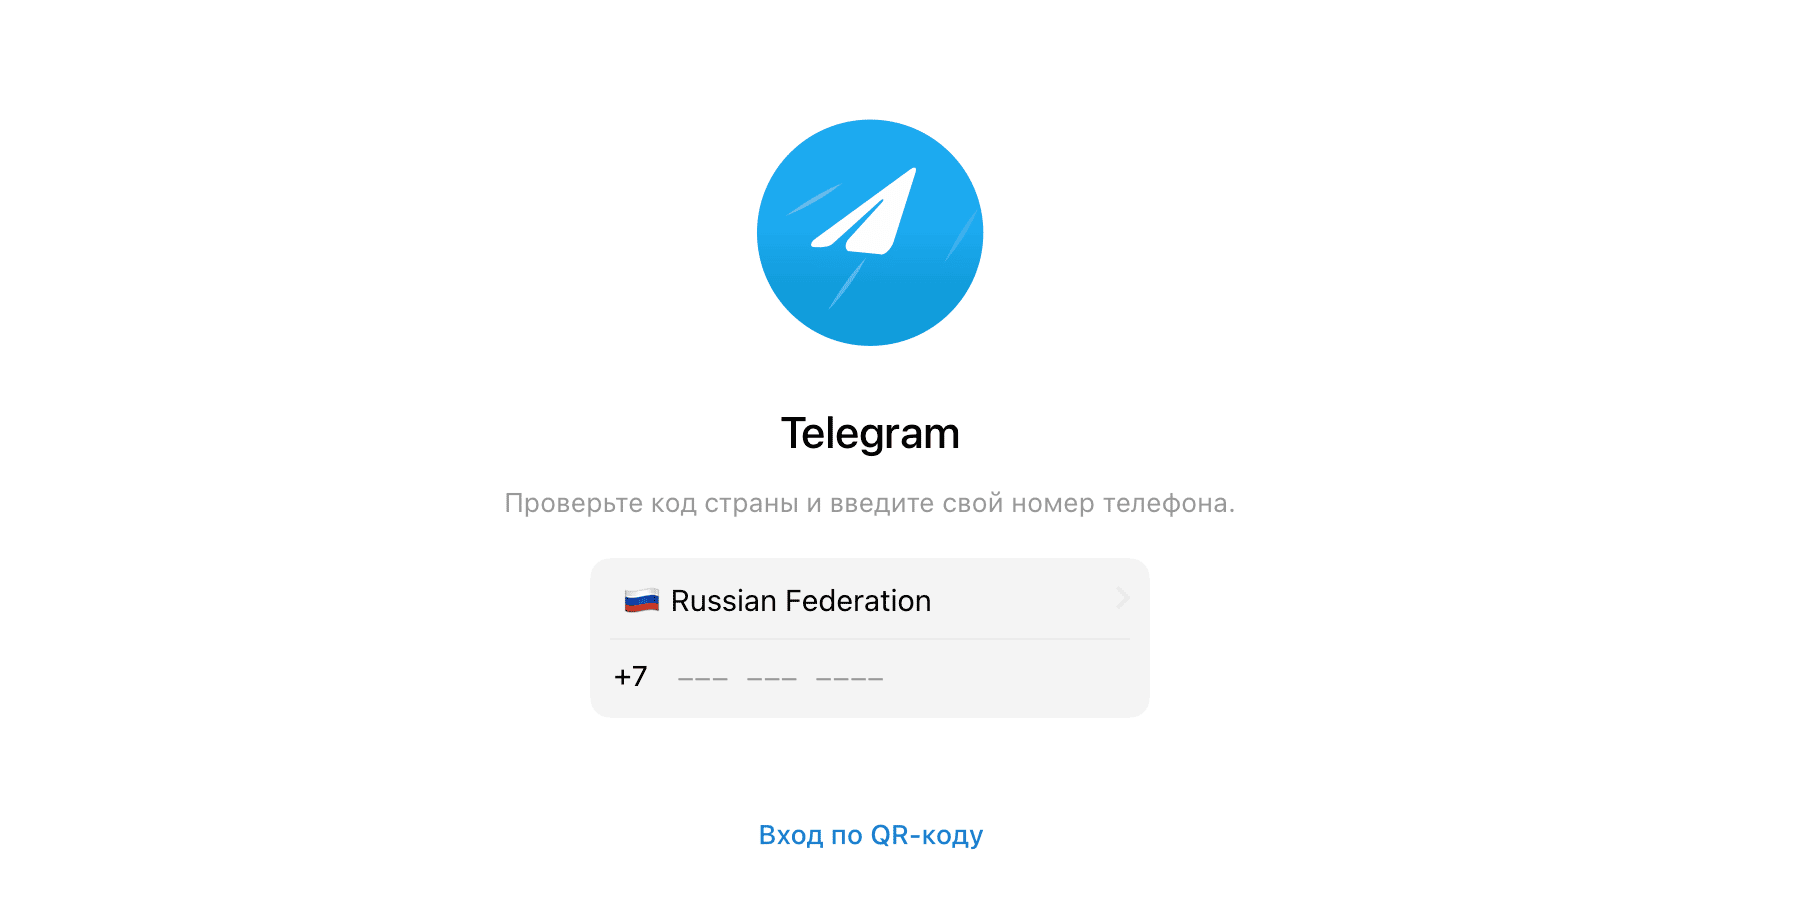 Скачать телеграмм для виндовс 7 32 бит бесплатно на русском (119) фото